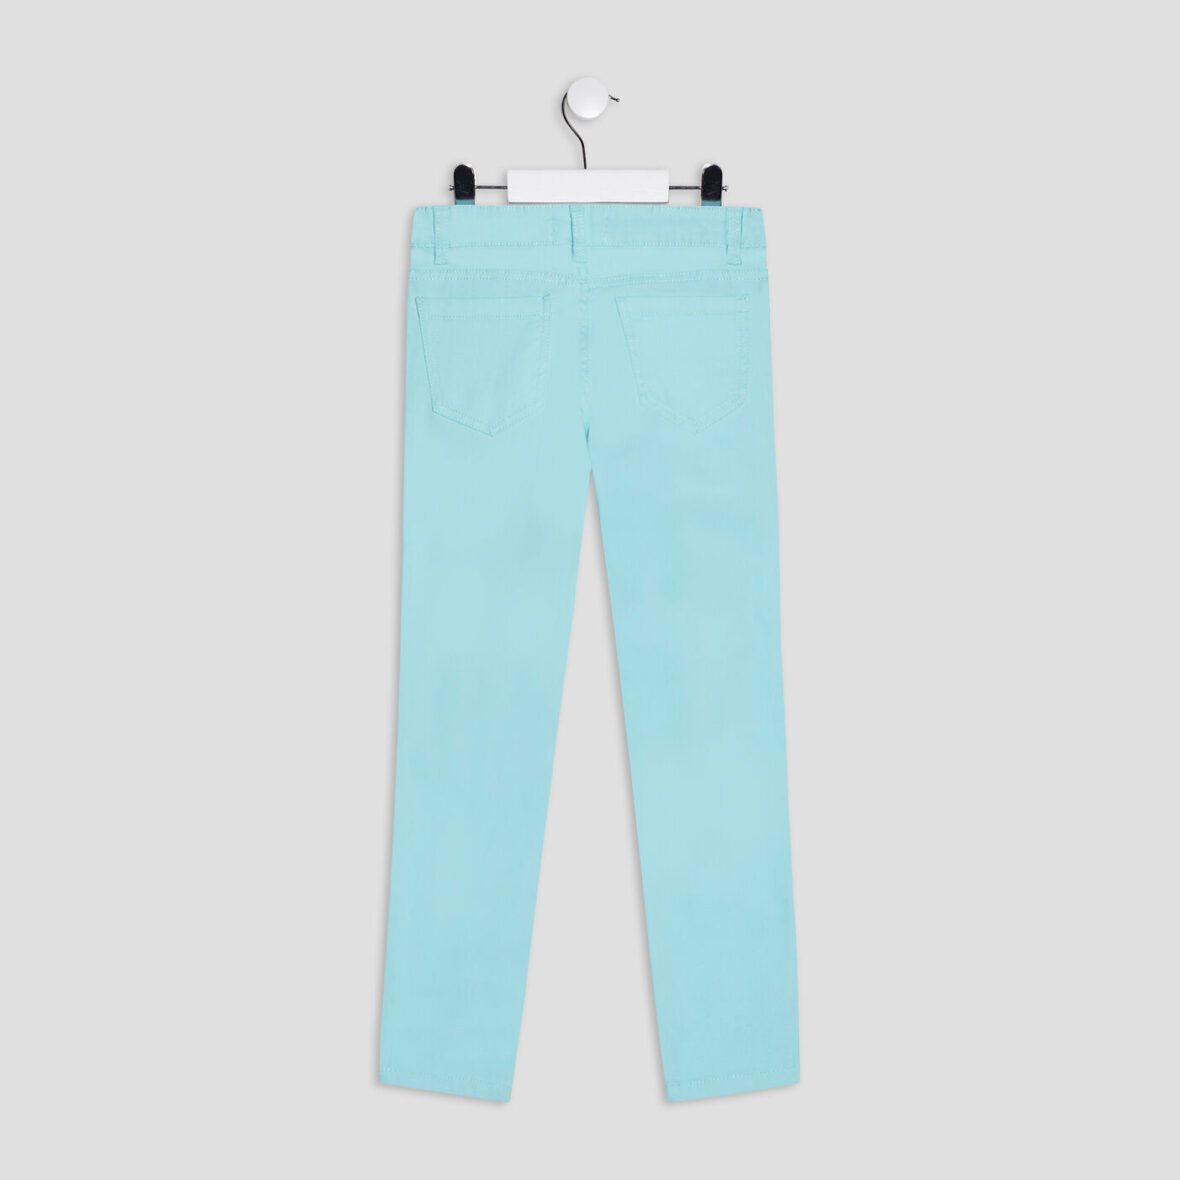 pantalon-slim-a-5-poches-bleu-turquoise-fille-a-36165600699411015